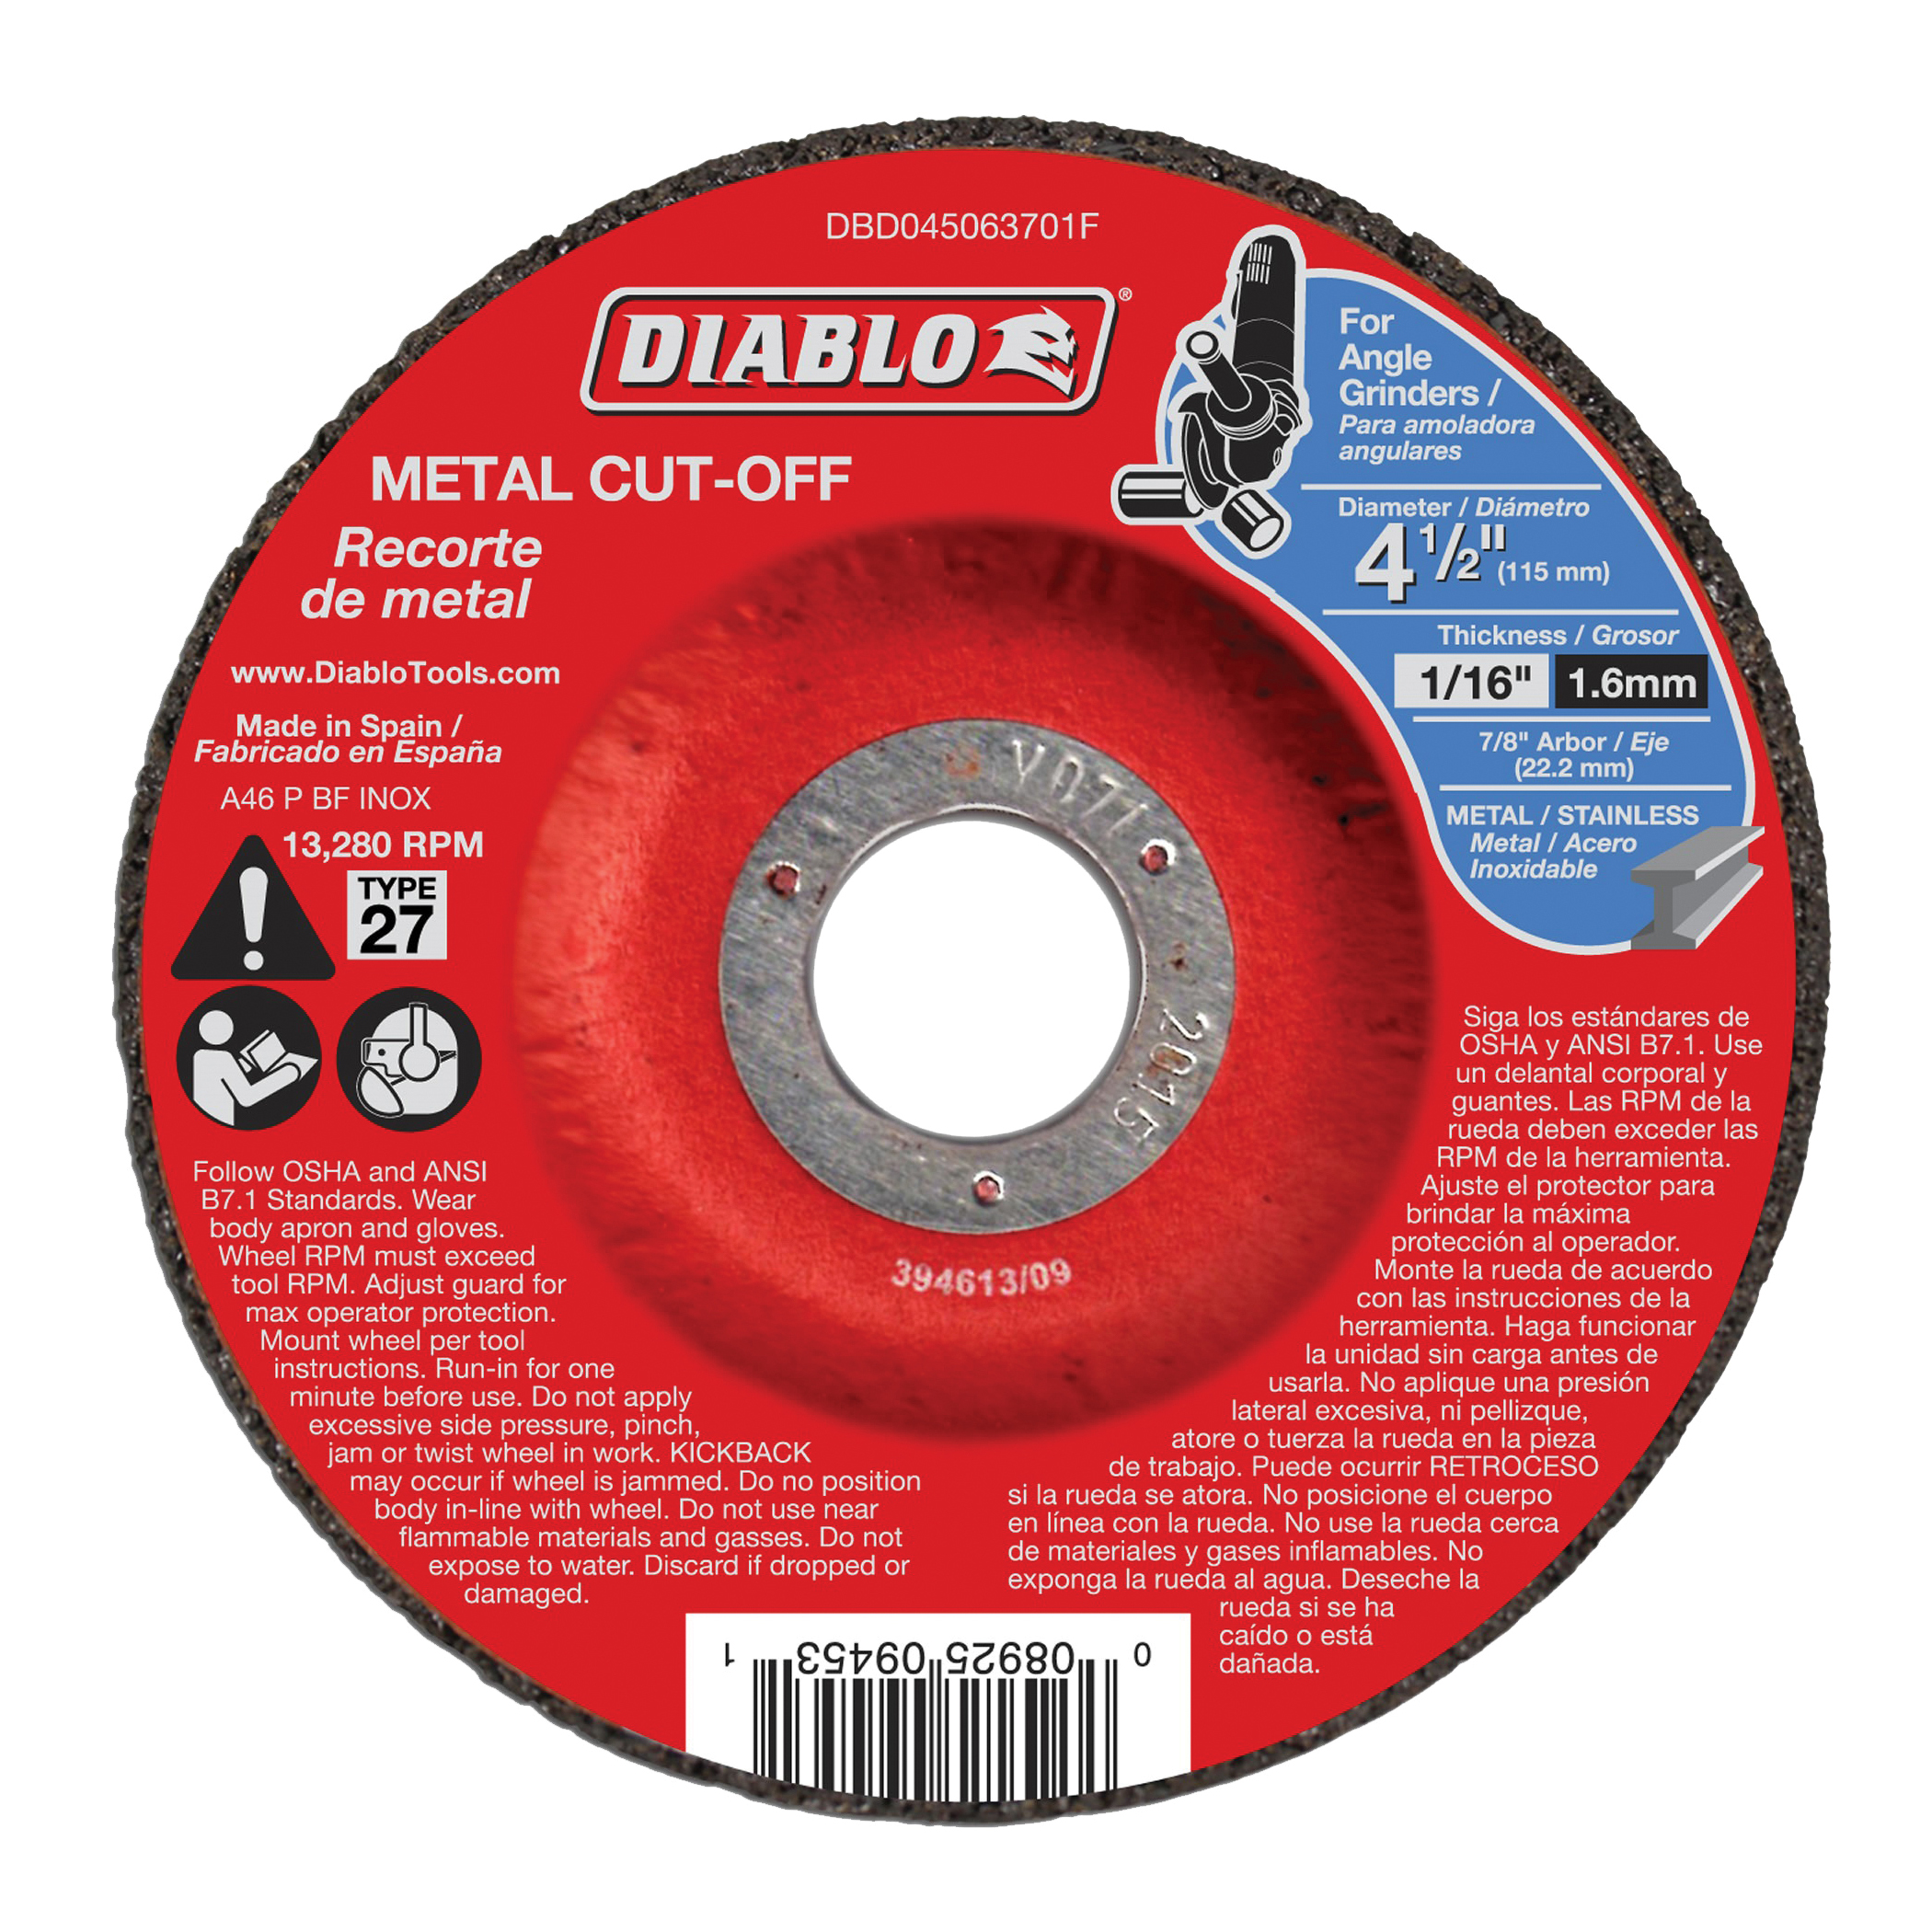 Diablo DBD045063701F